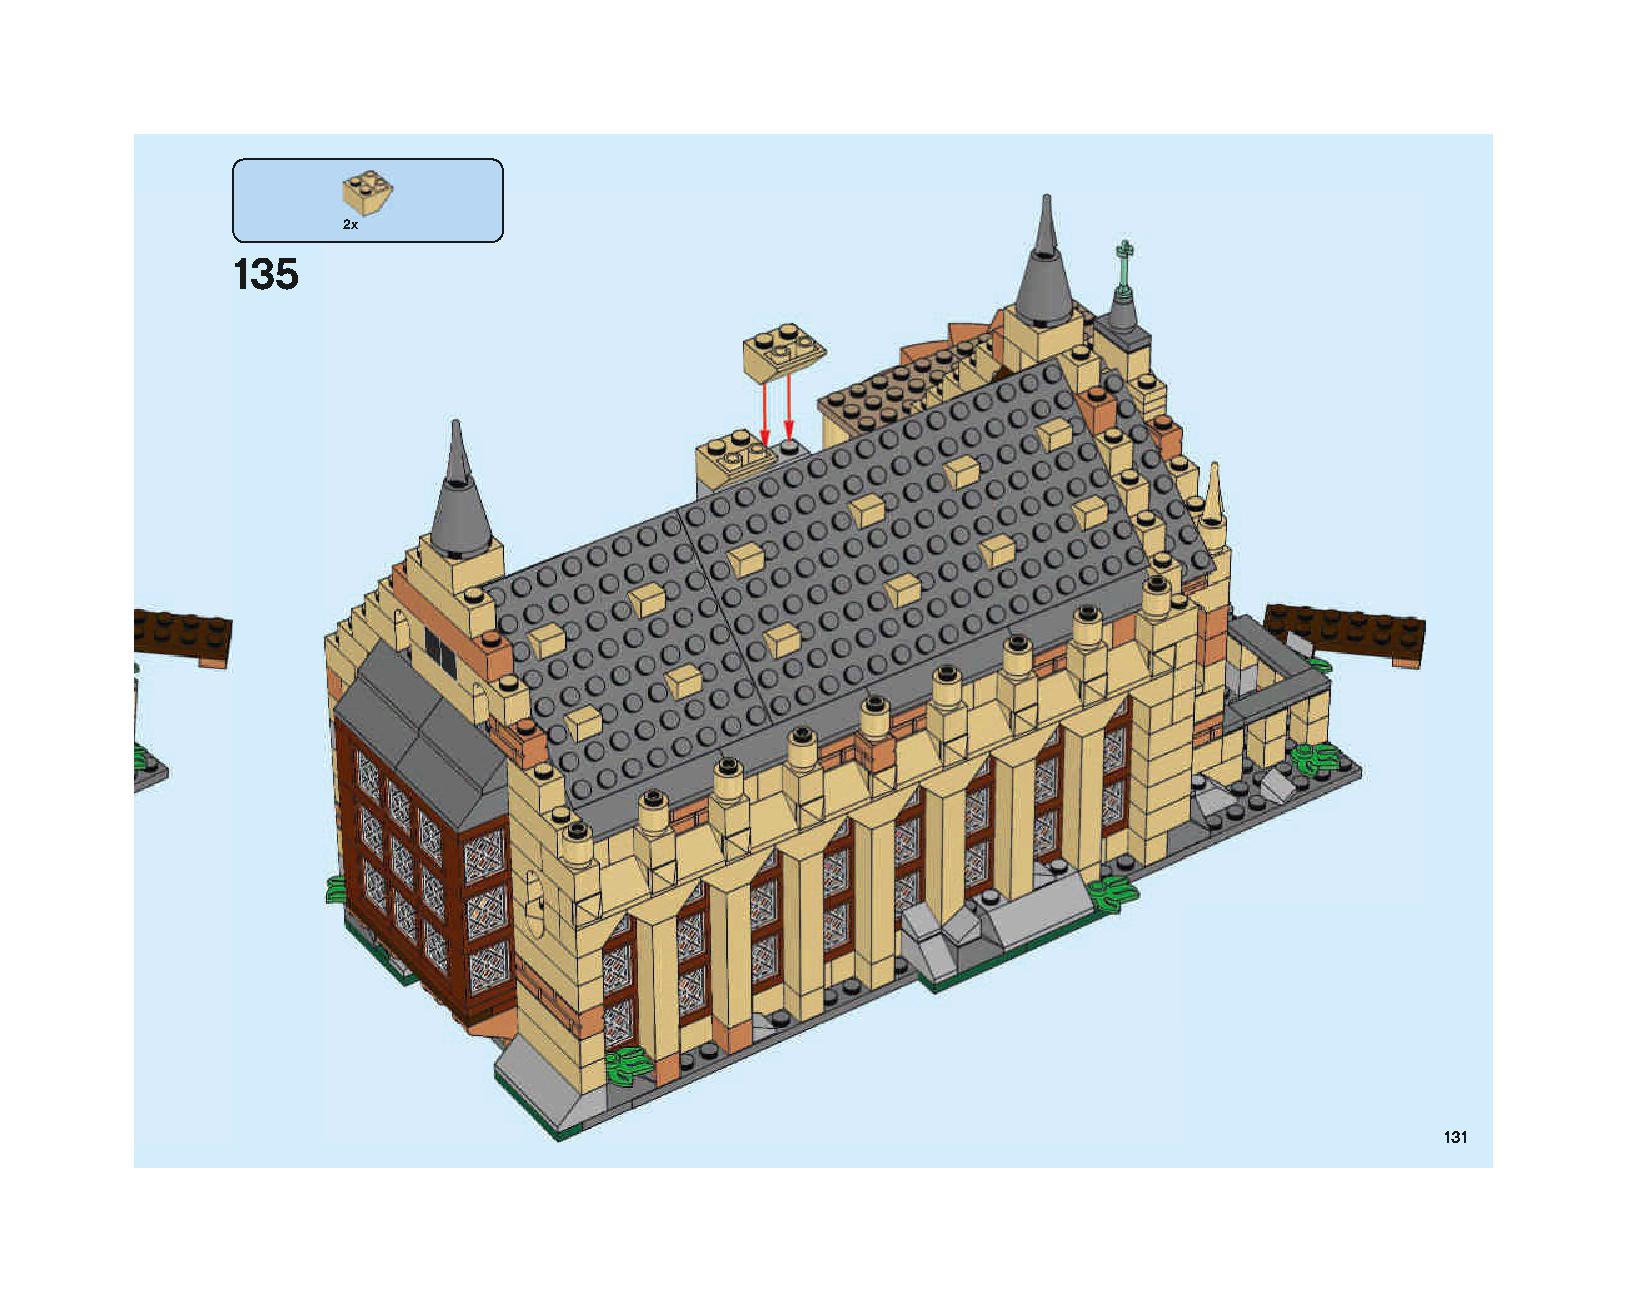 ホグワーツの大広間 75954 レゴの商品情報 レゴの説明書・組立方法 131 page